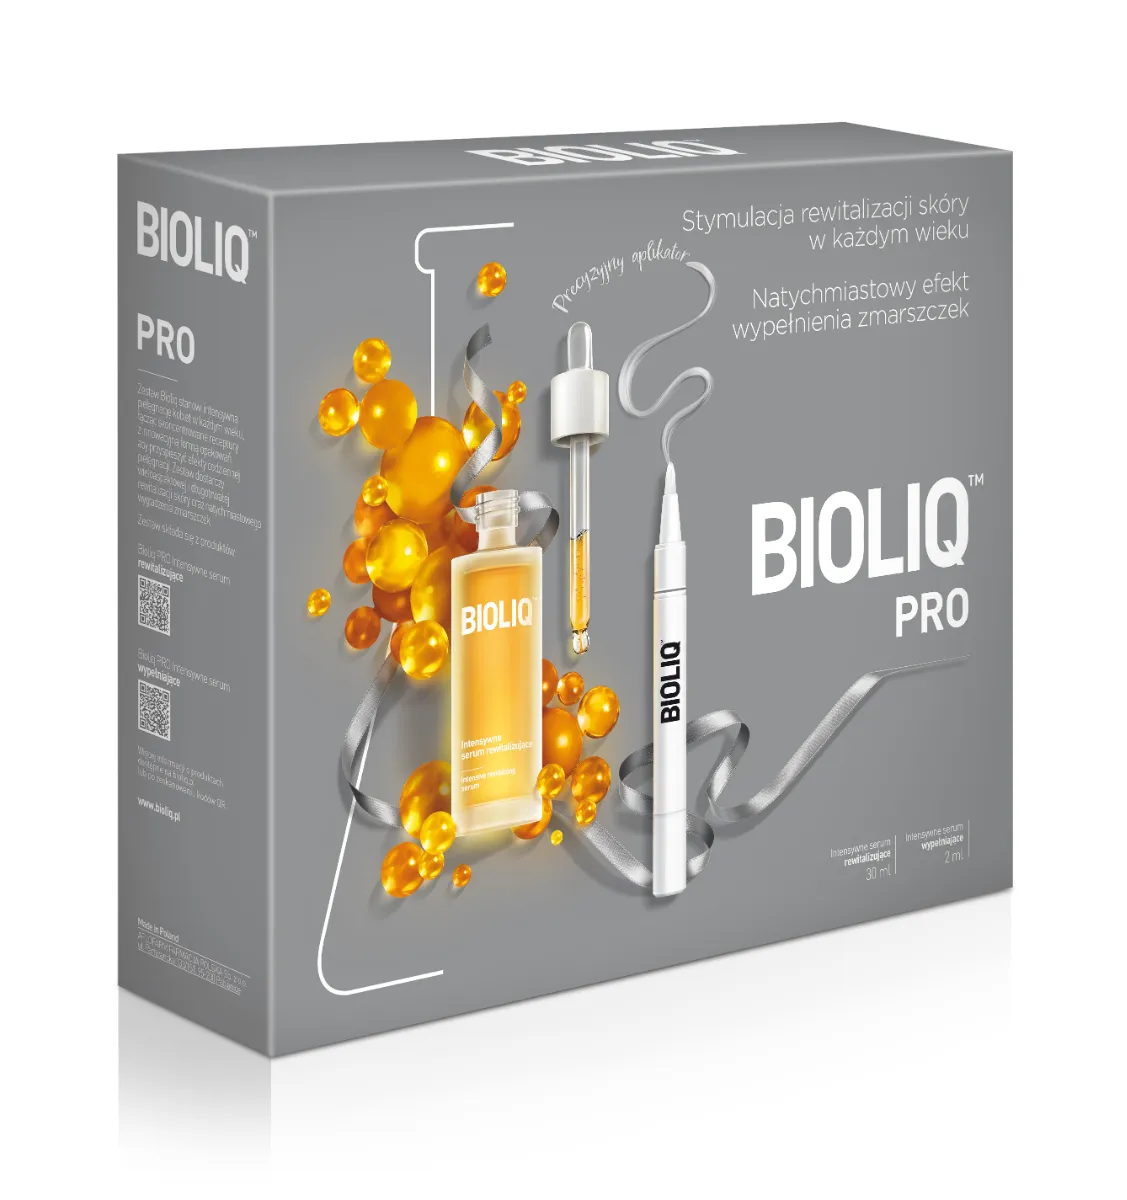 Bioliq Pro, intensywne serum rewitalizujące + intensywne serum wypełniające, 30 ml + 2 ml